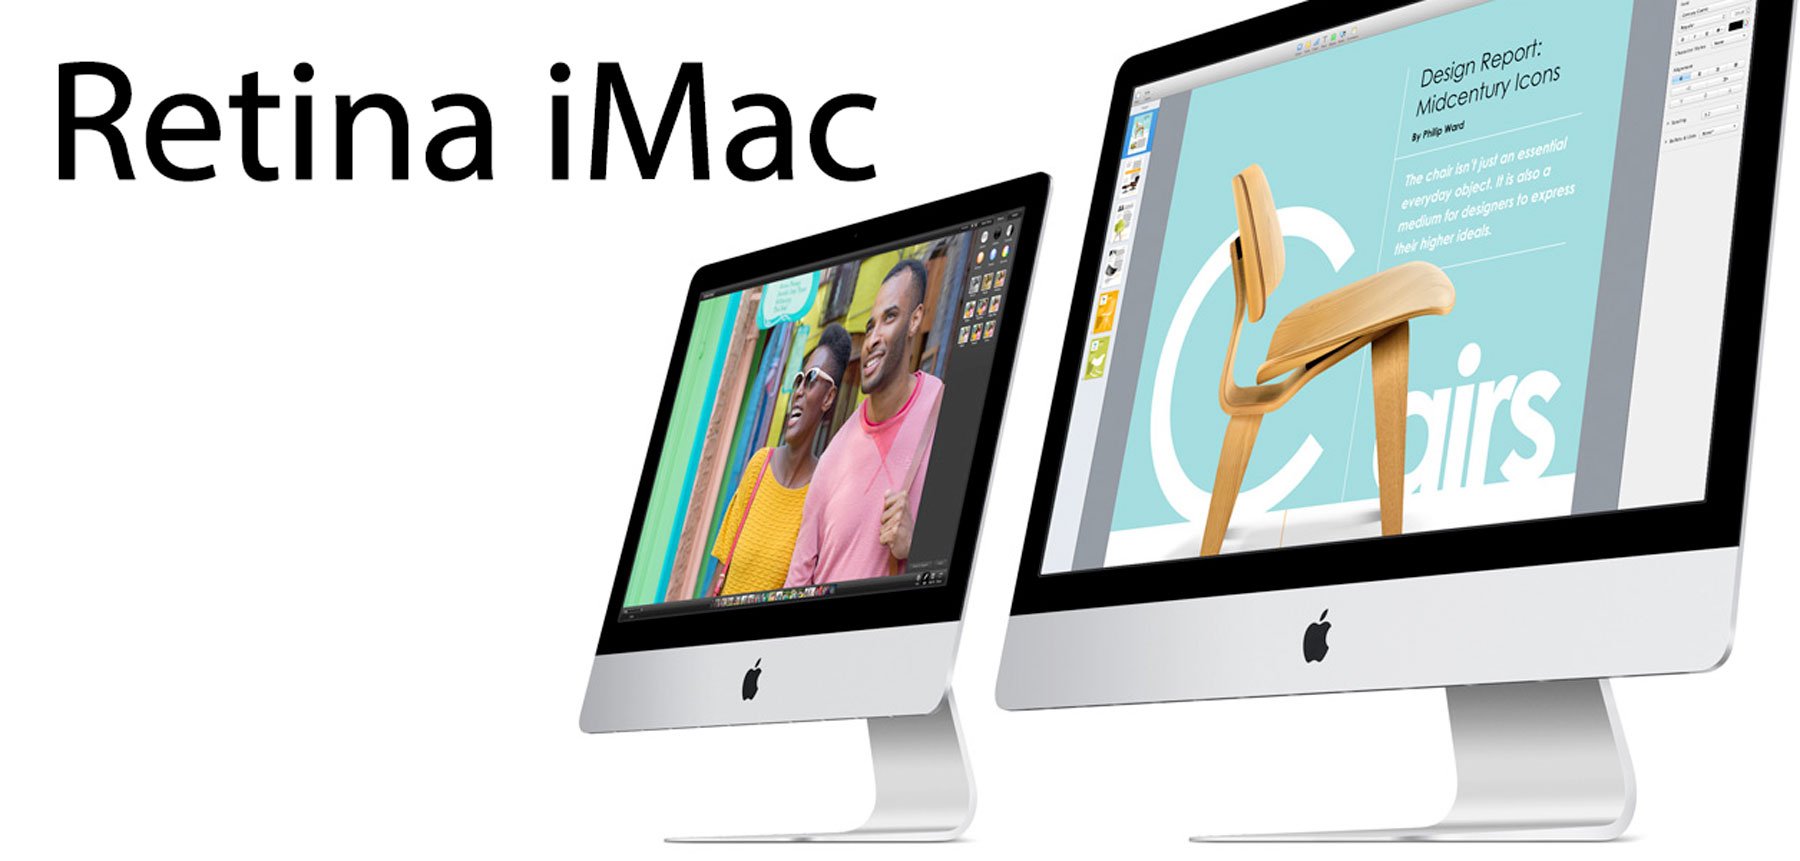 Retina iMac kommt, Retina MacBook Air später 3